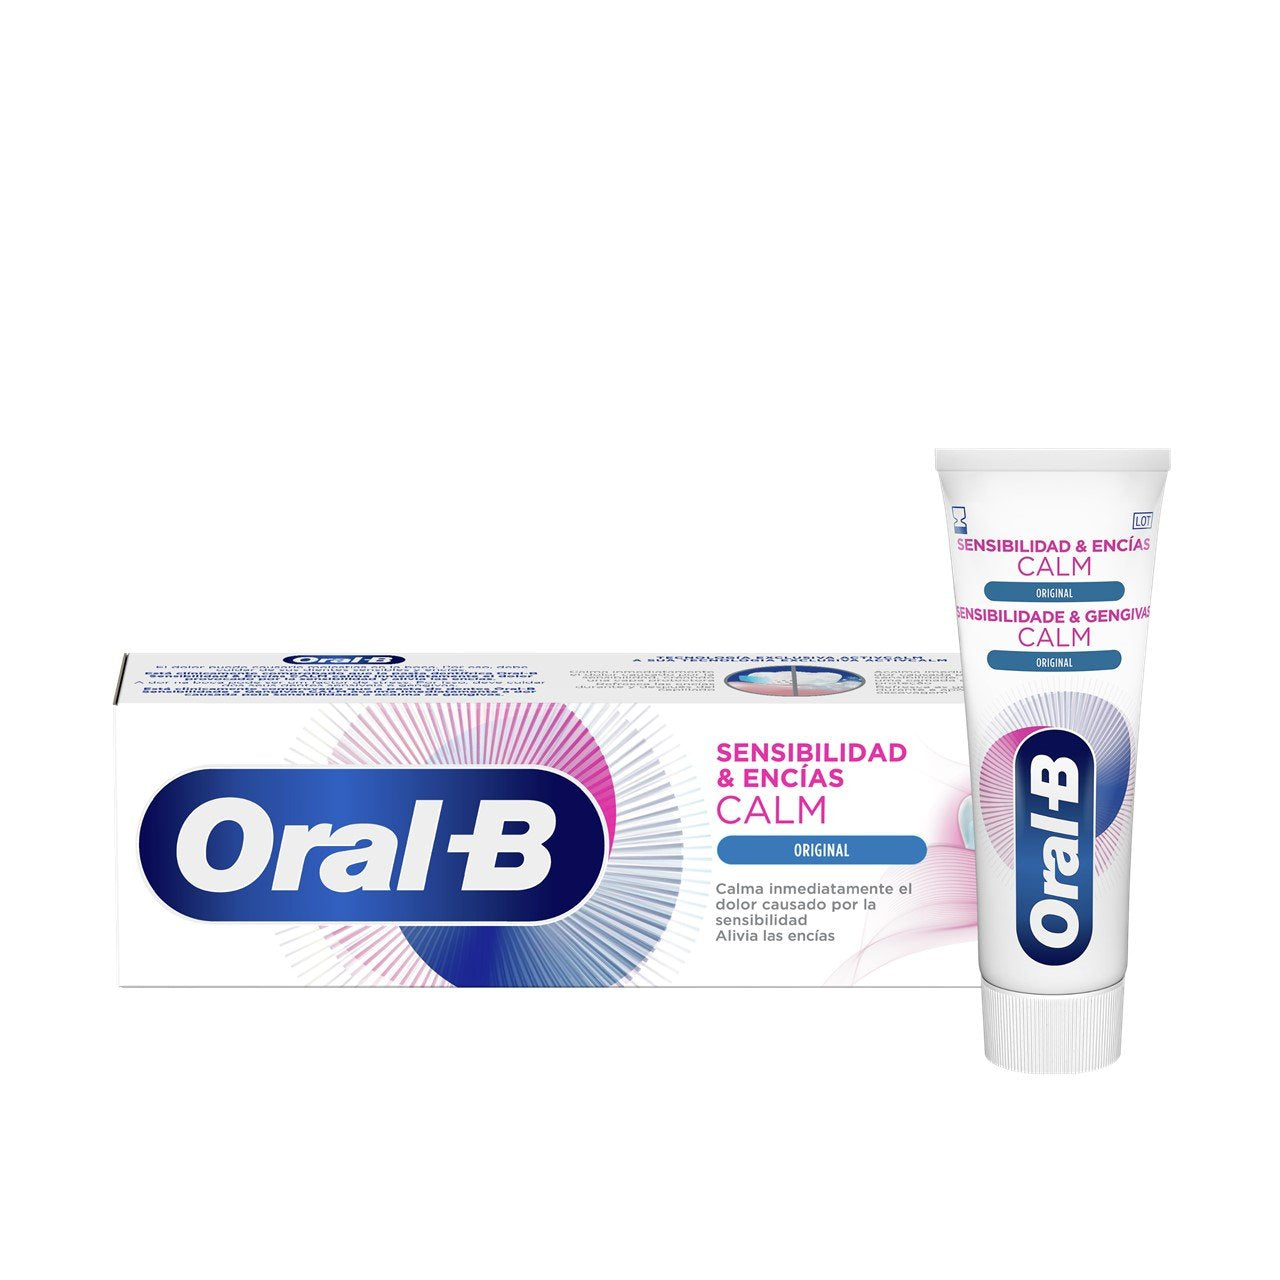 Oral-B Sensitivity &amp; Gum Calm Original Toothpaste 75ml